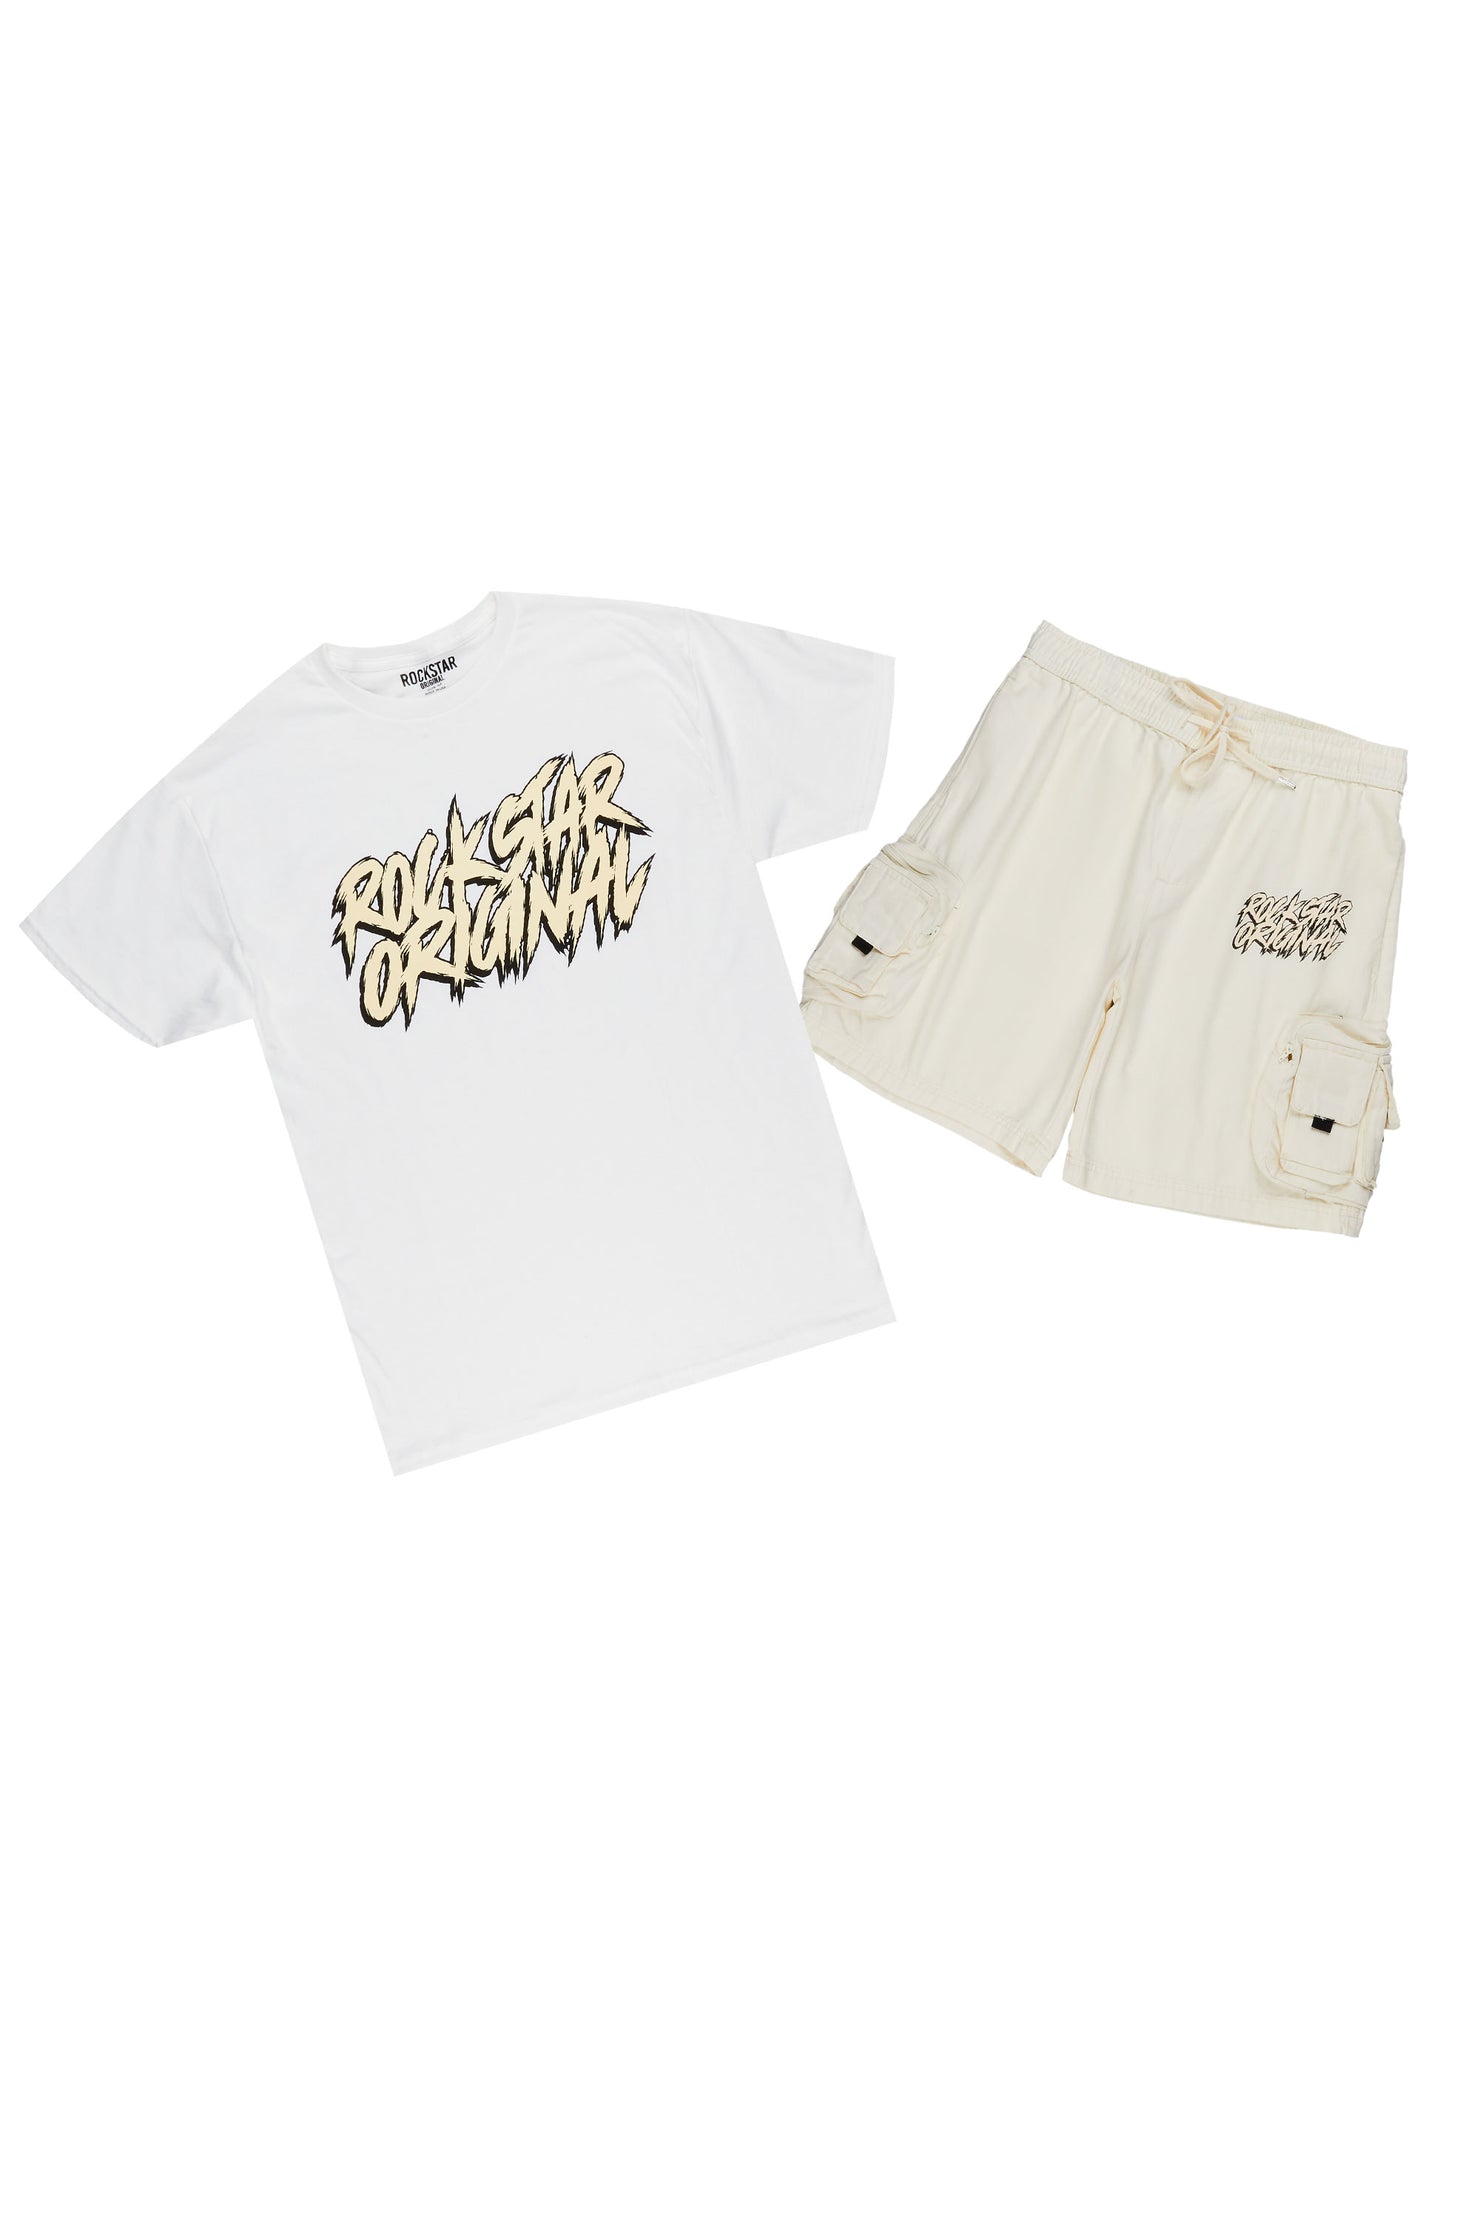 Zustrand White/Cream T-Shirt Short Set